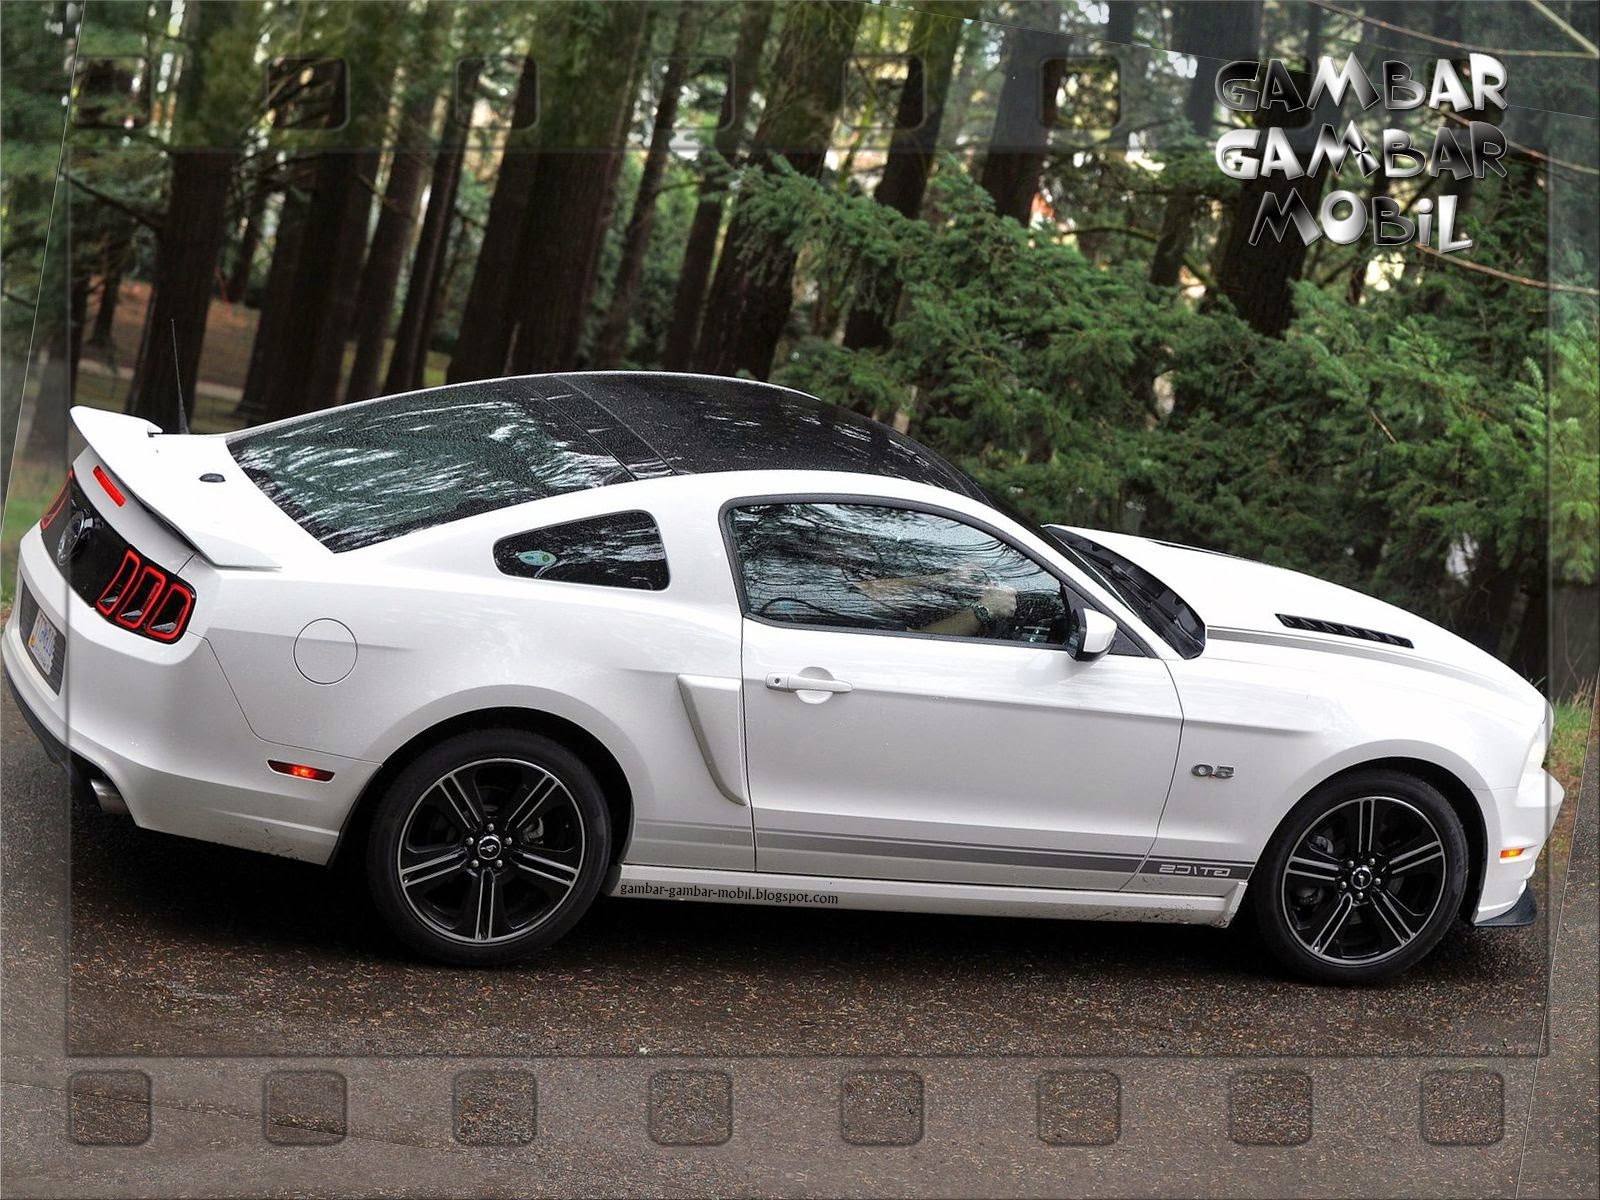 Kumpulan Modifikasi Mobil Sedan Mustang Terbaru Modifikasi Mobil Sedan